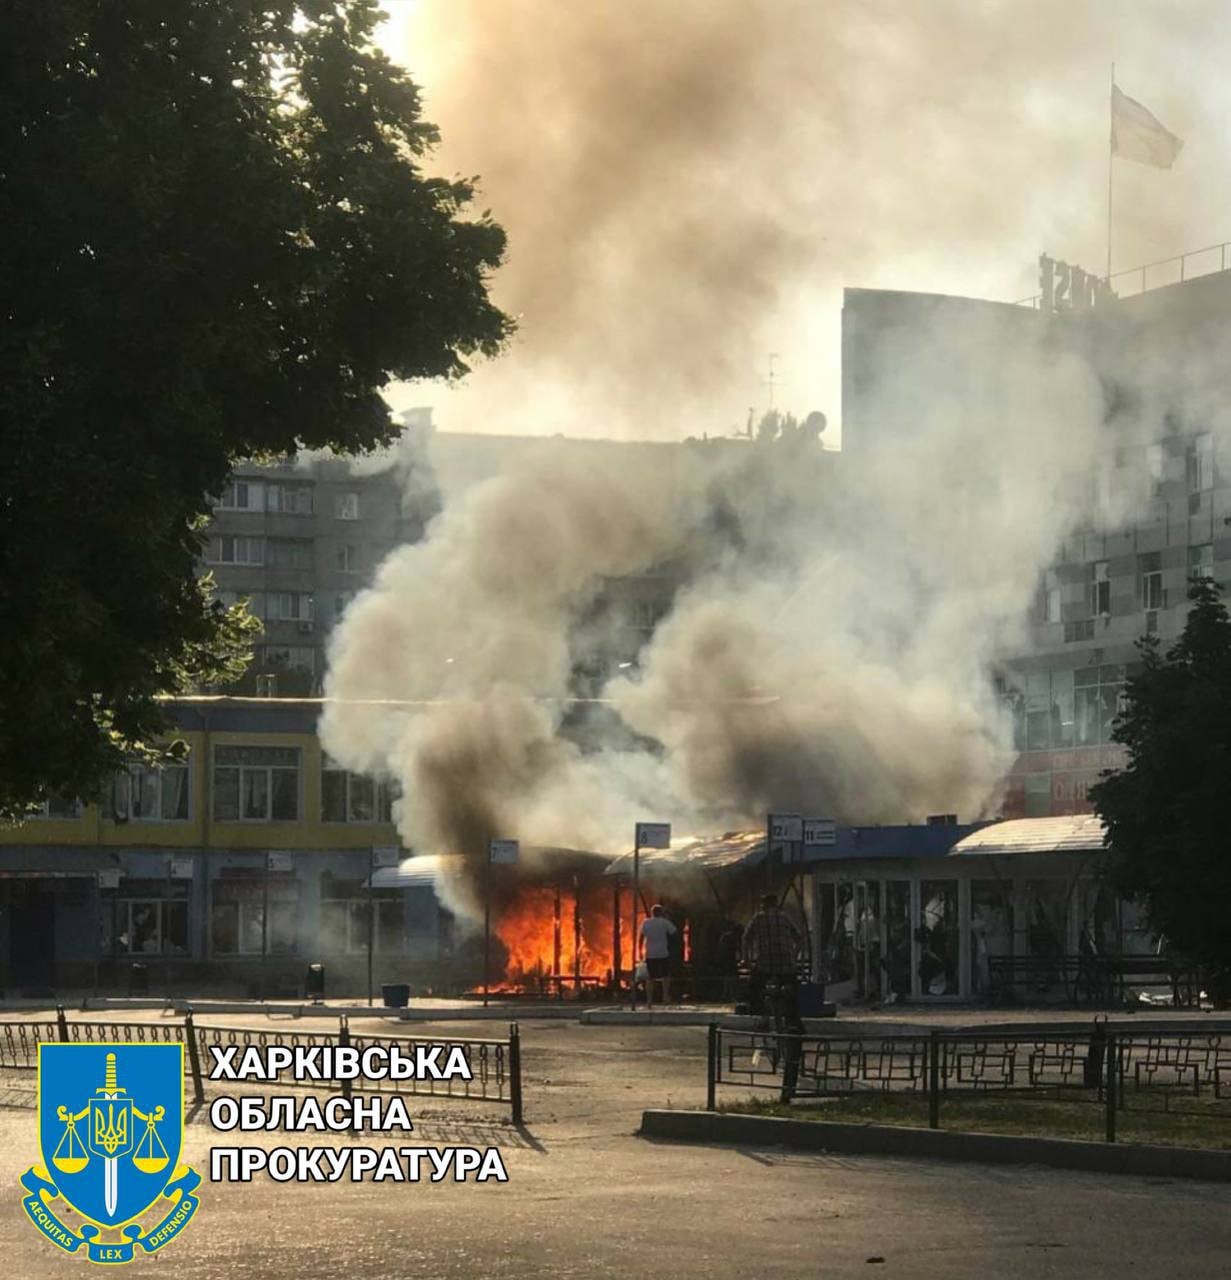 фото пожара в Чугуеве Харьковской области после сегодняшнего обстрела 21 июня 2022 года